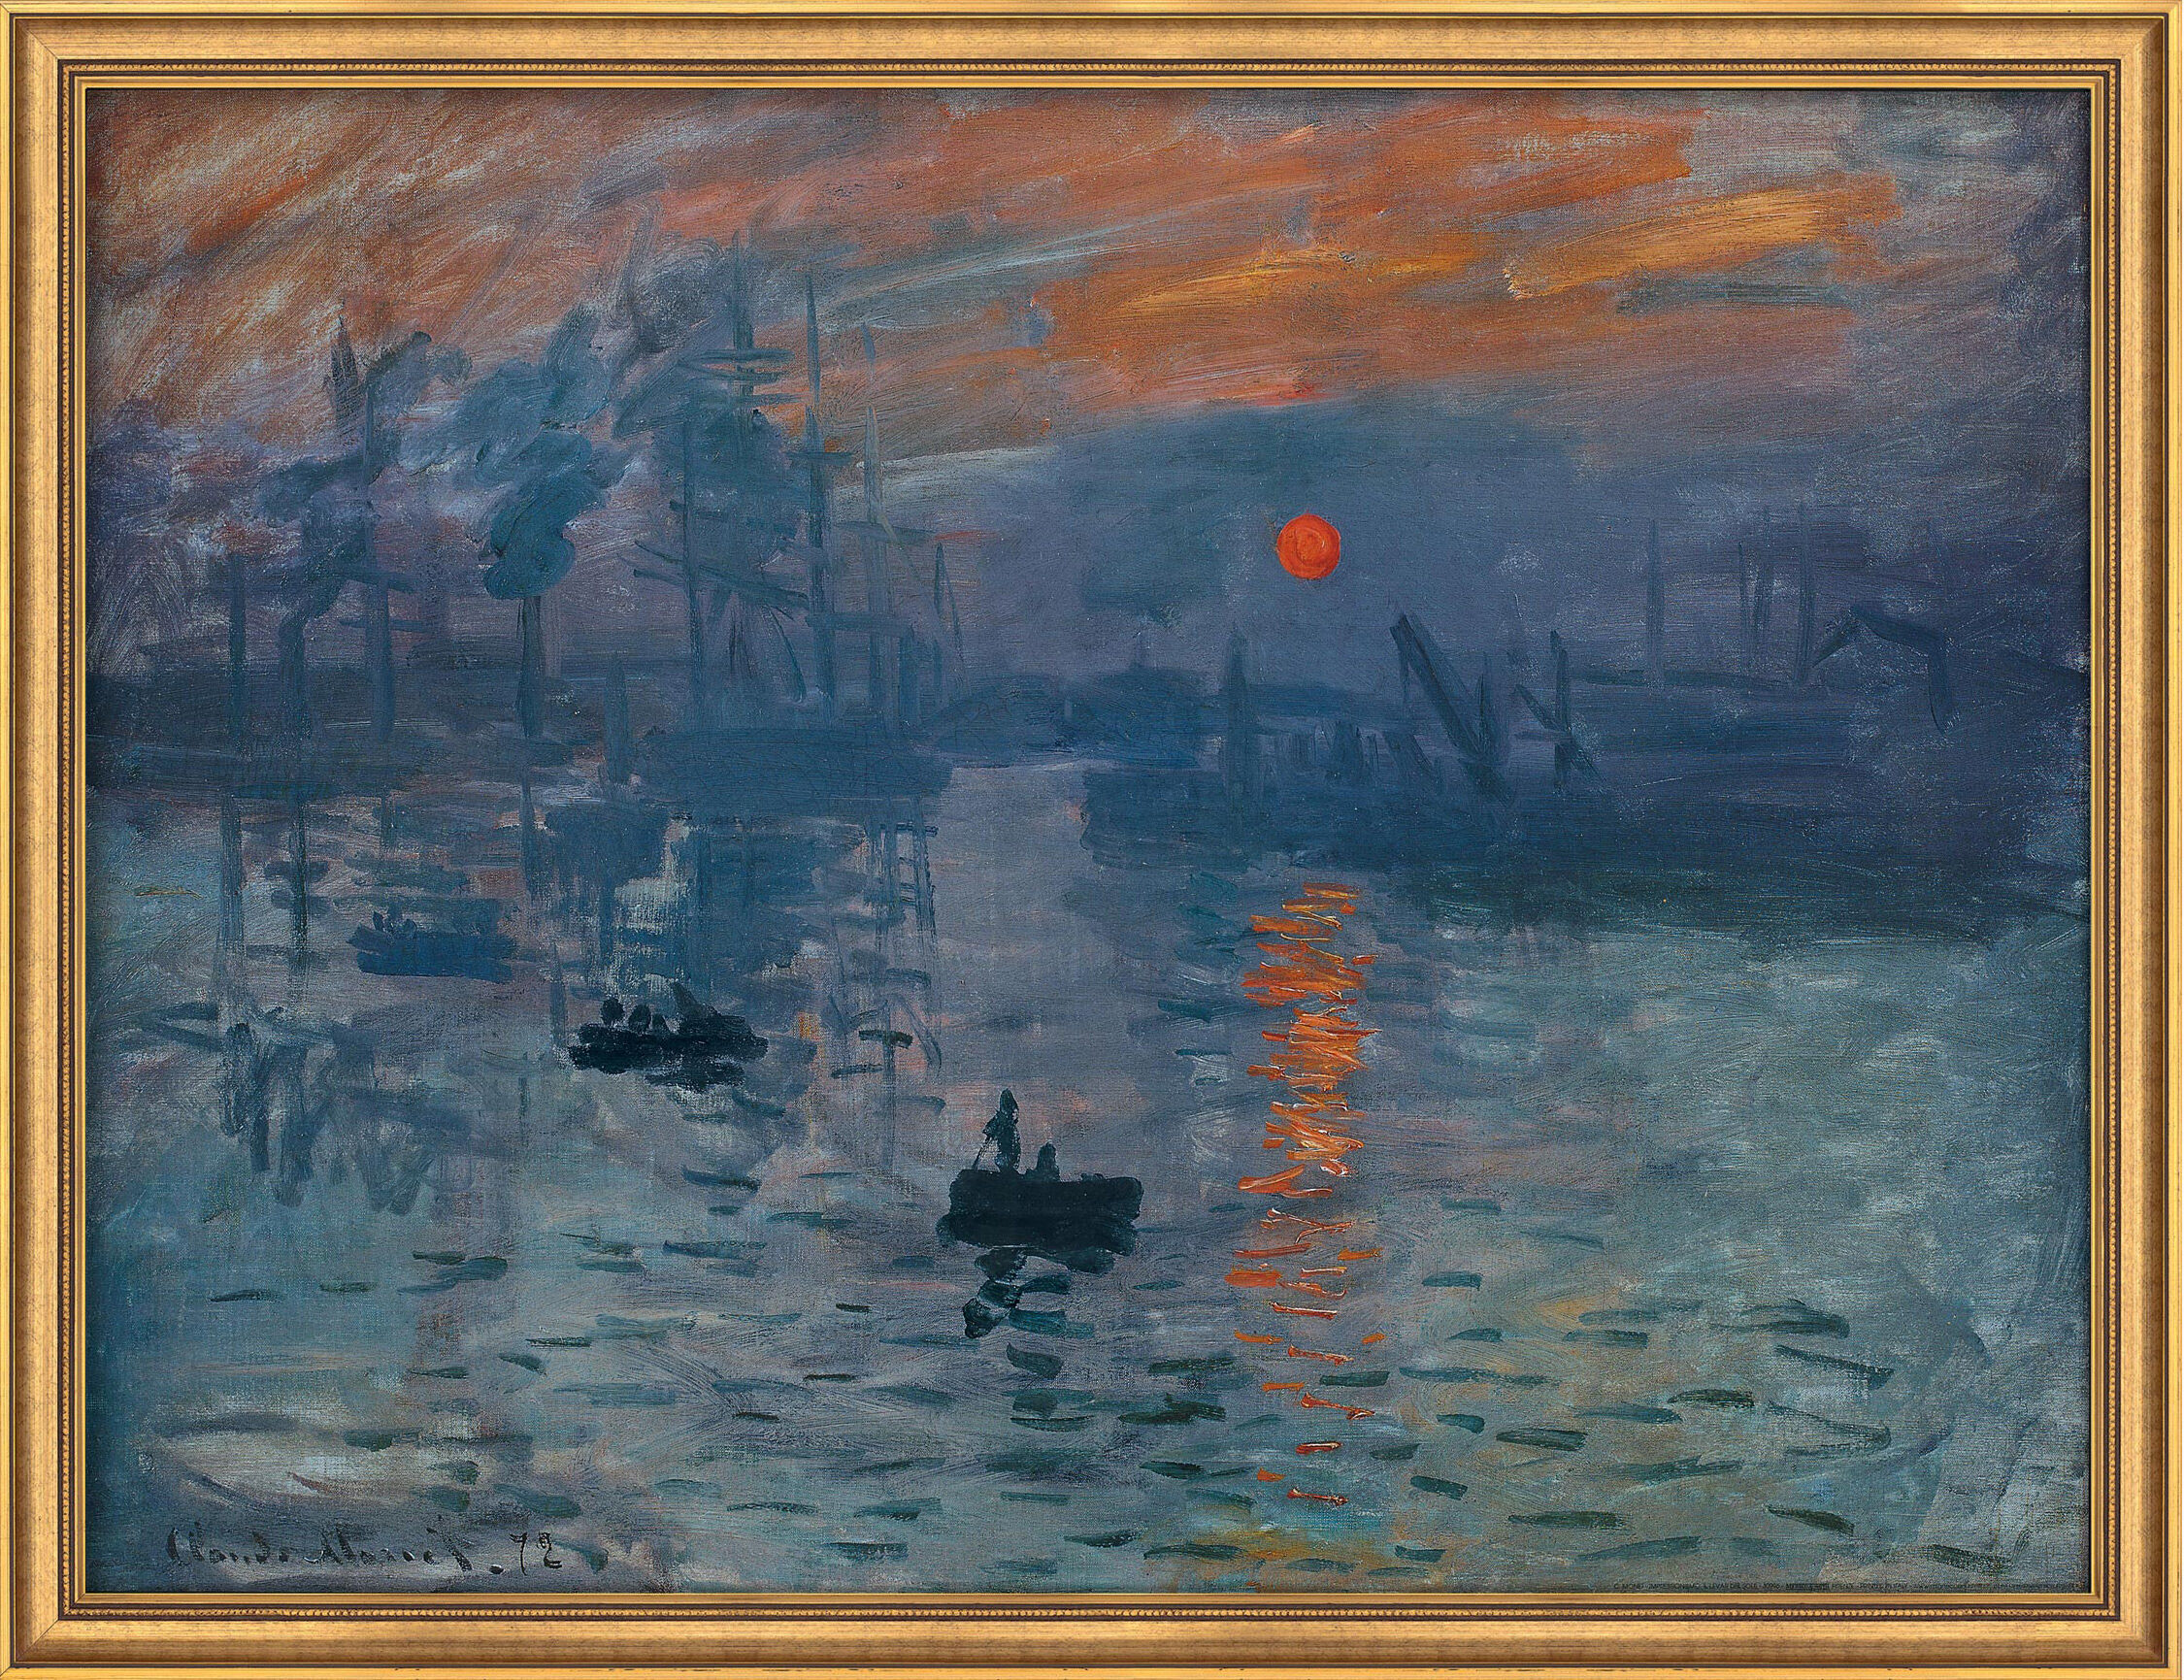 Tableau "Impression, soleil levant" (1873), encadré von Claude Monet